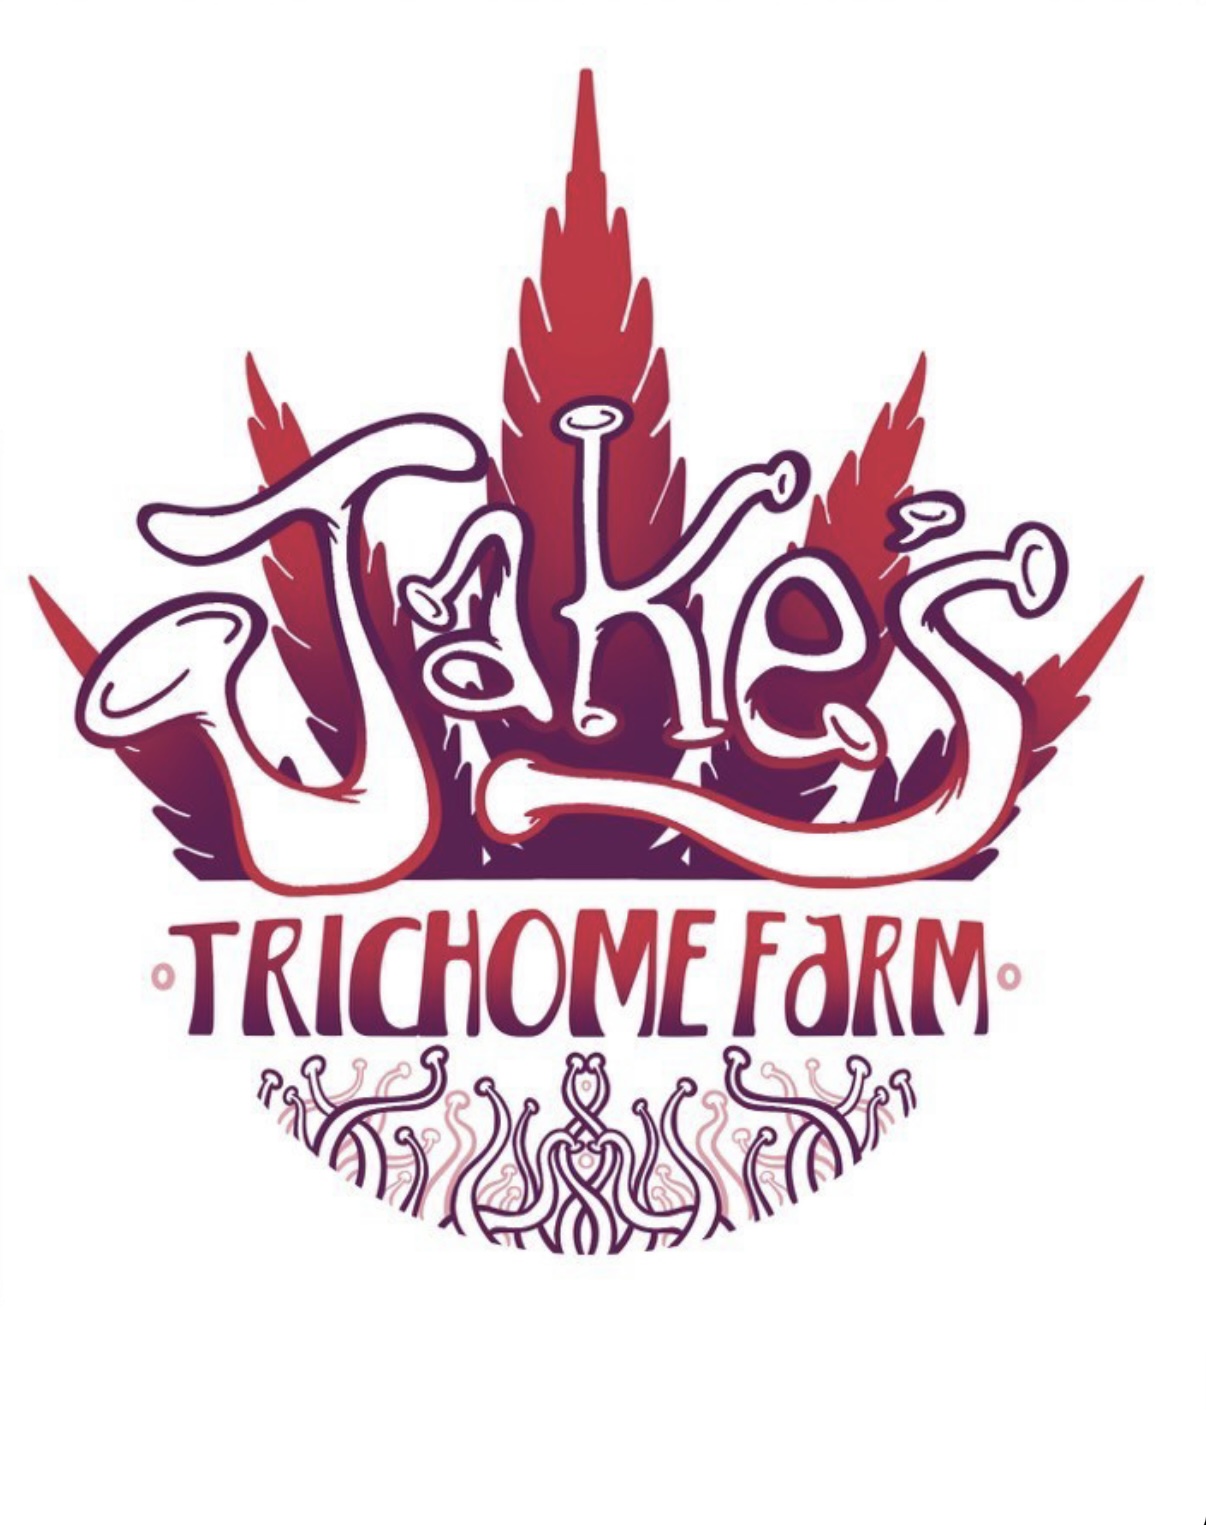 Jake’s Trichome Farm LLC